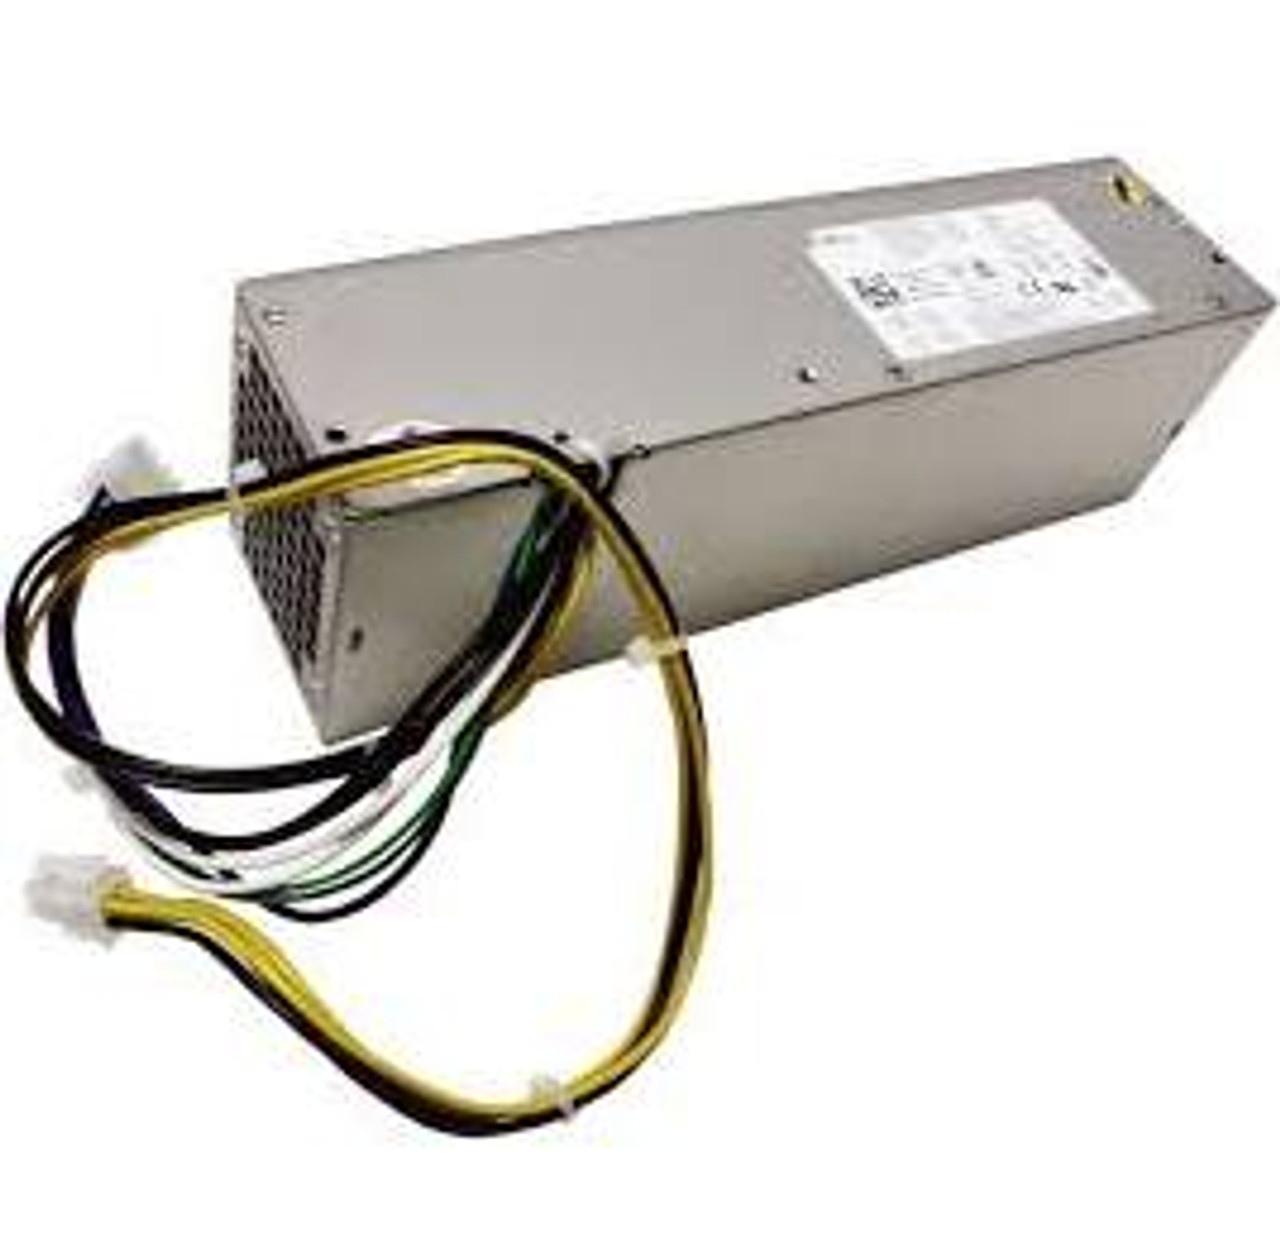 DELL 255 Watt Power Supply For Optiplex 3020/9020/7020(0fp16x)